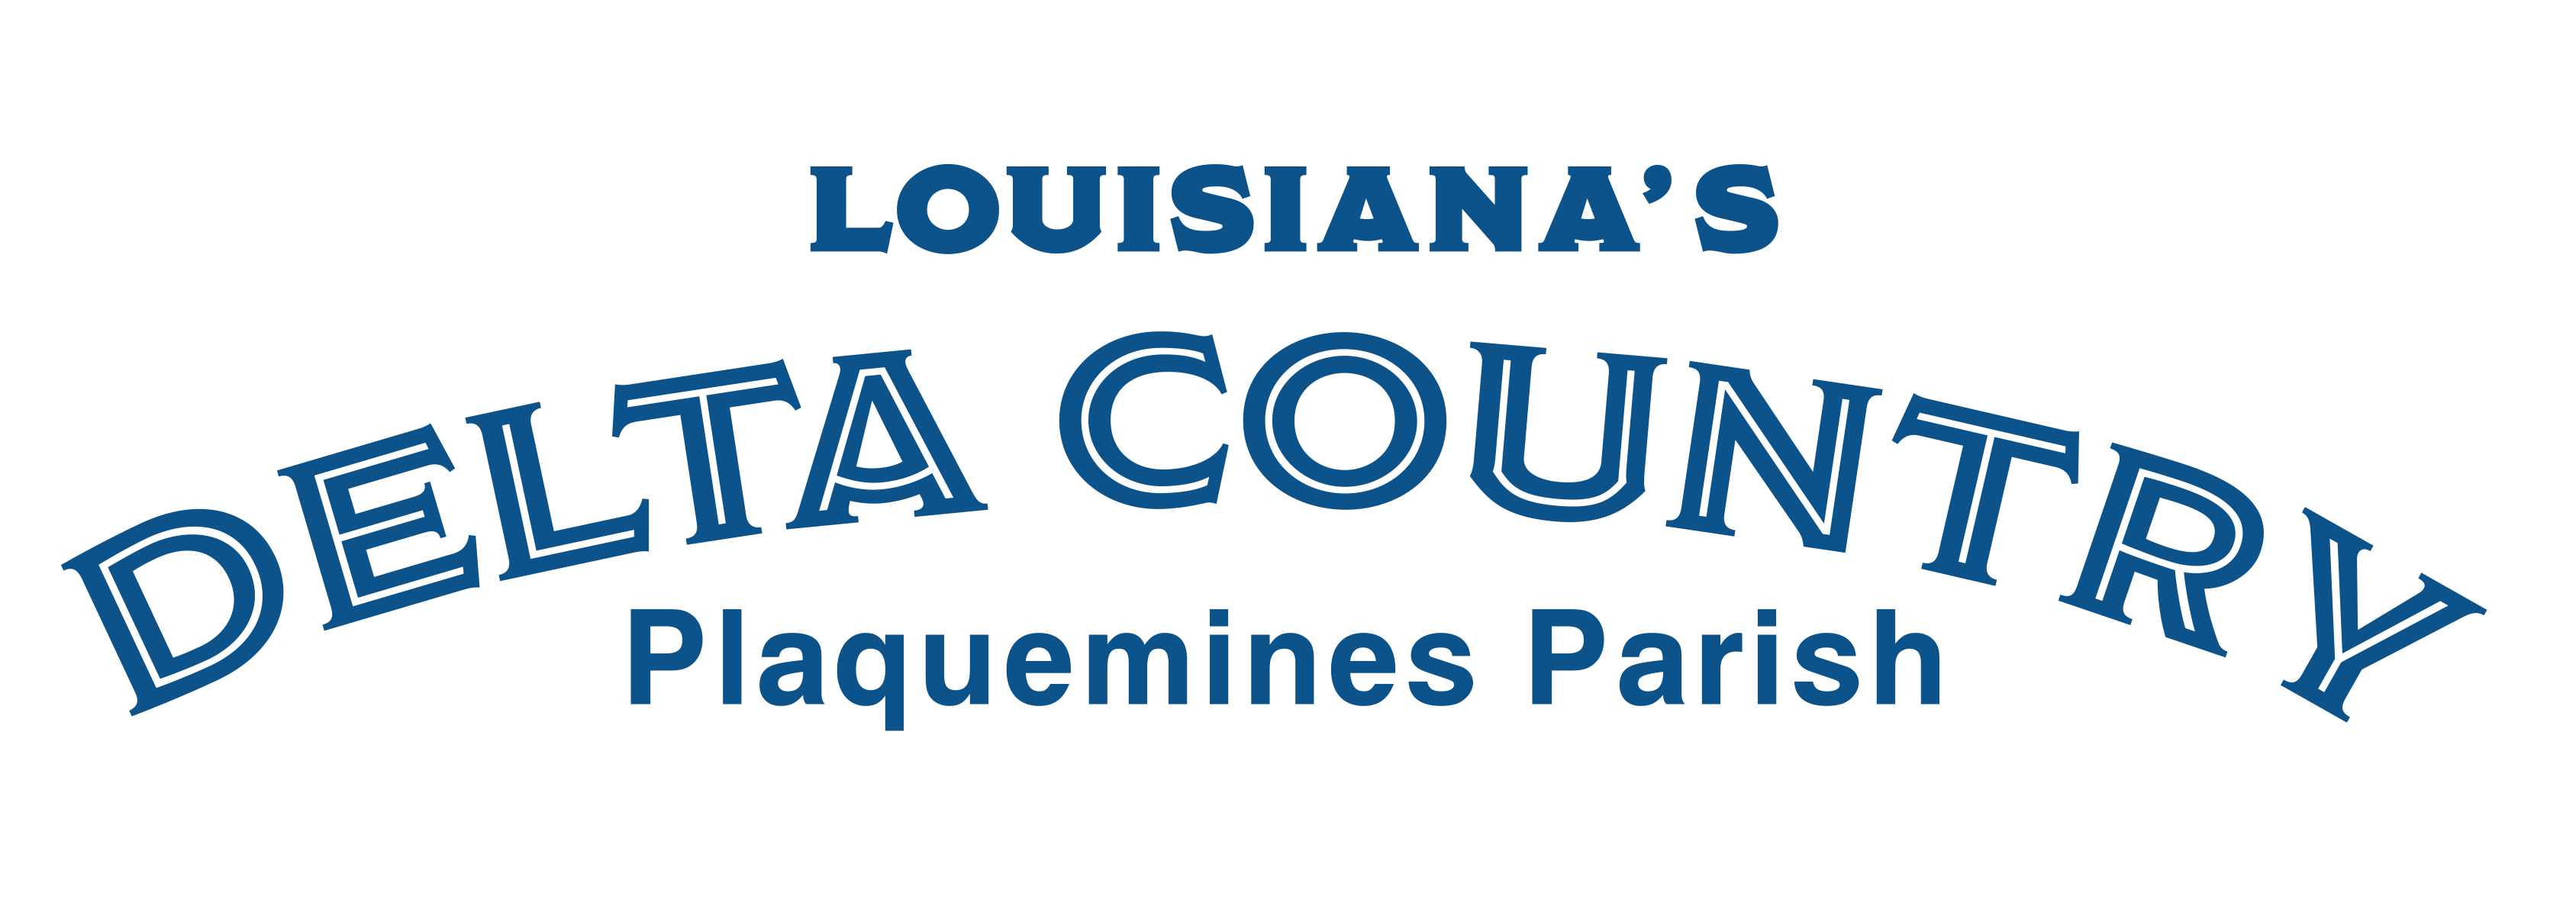 Louisiana's Delta Country Plaquemines Parish